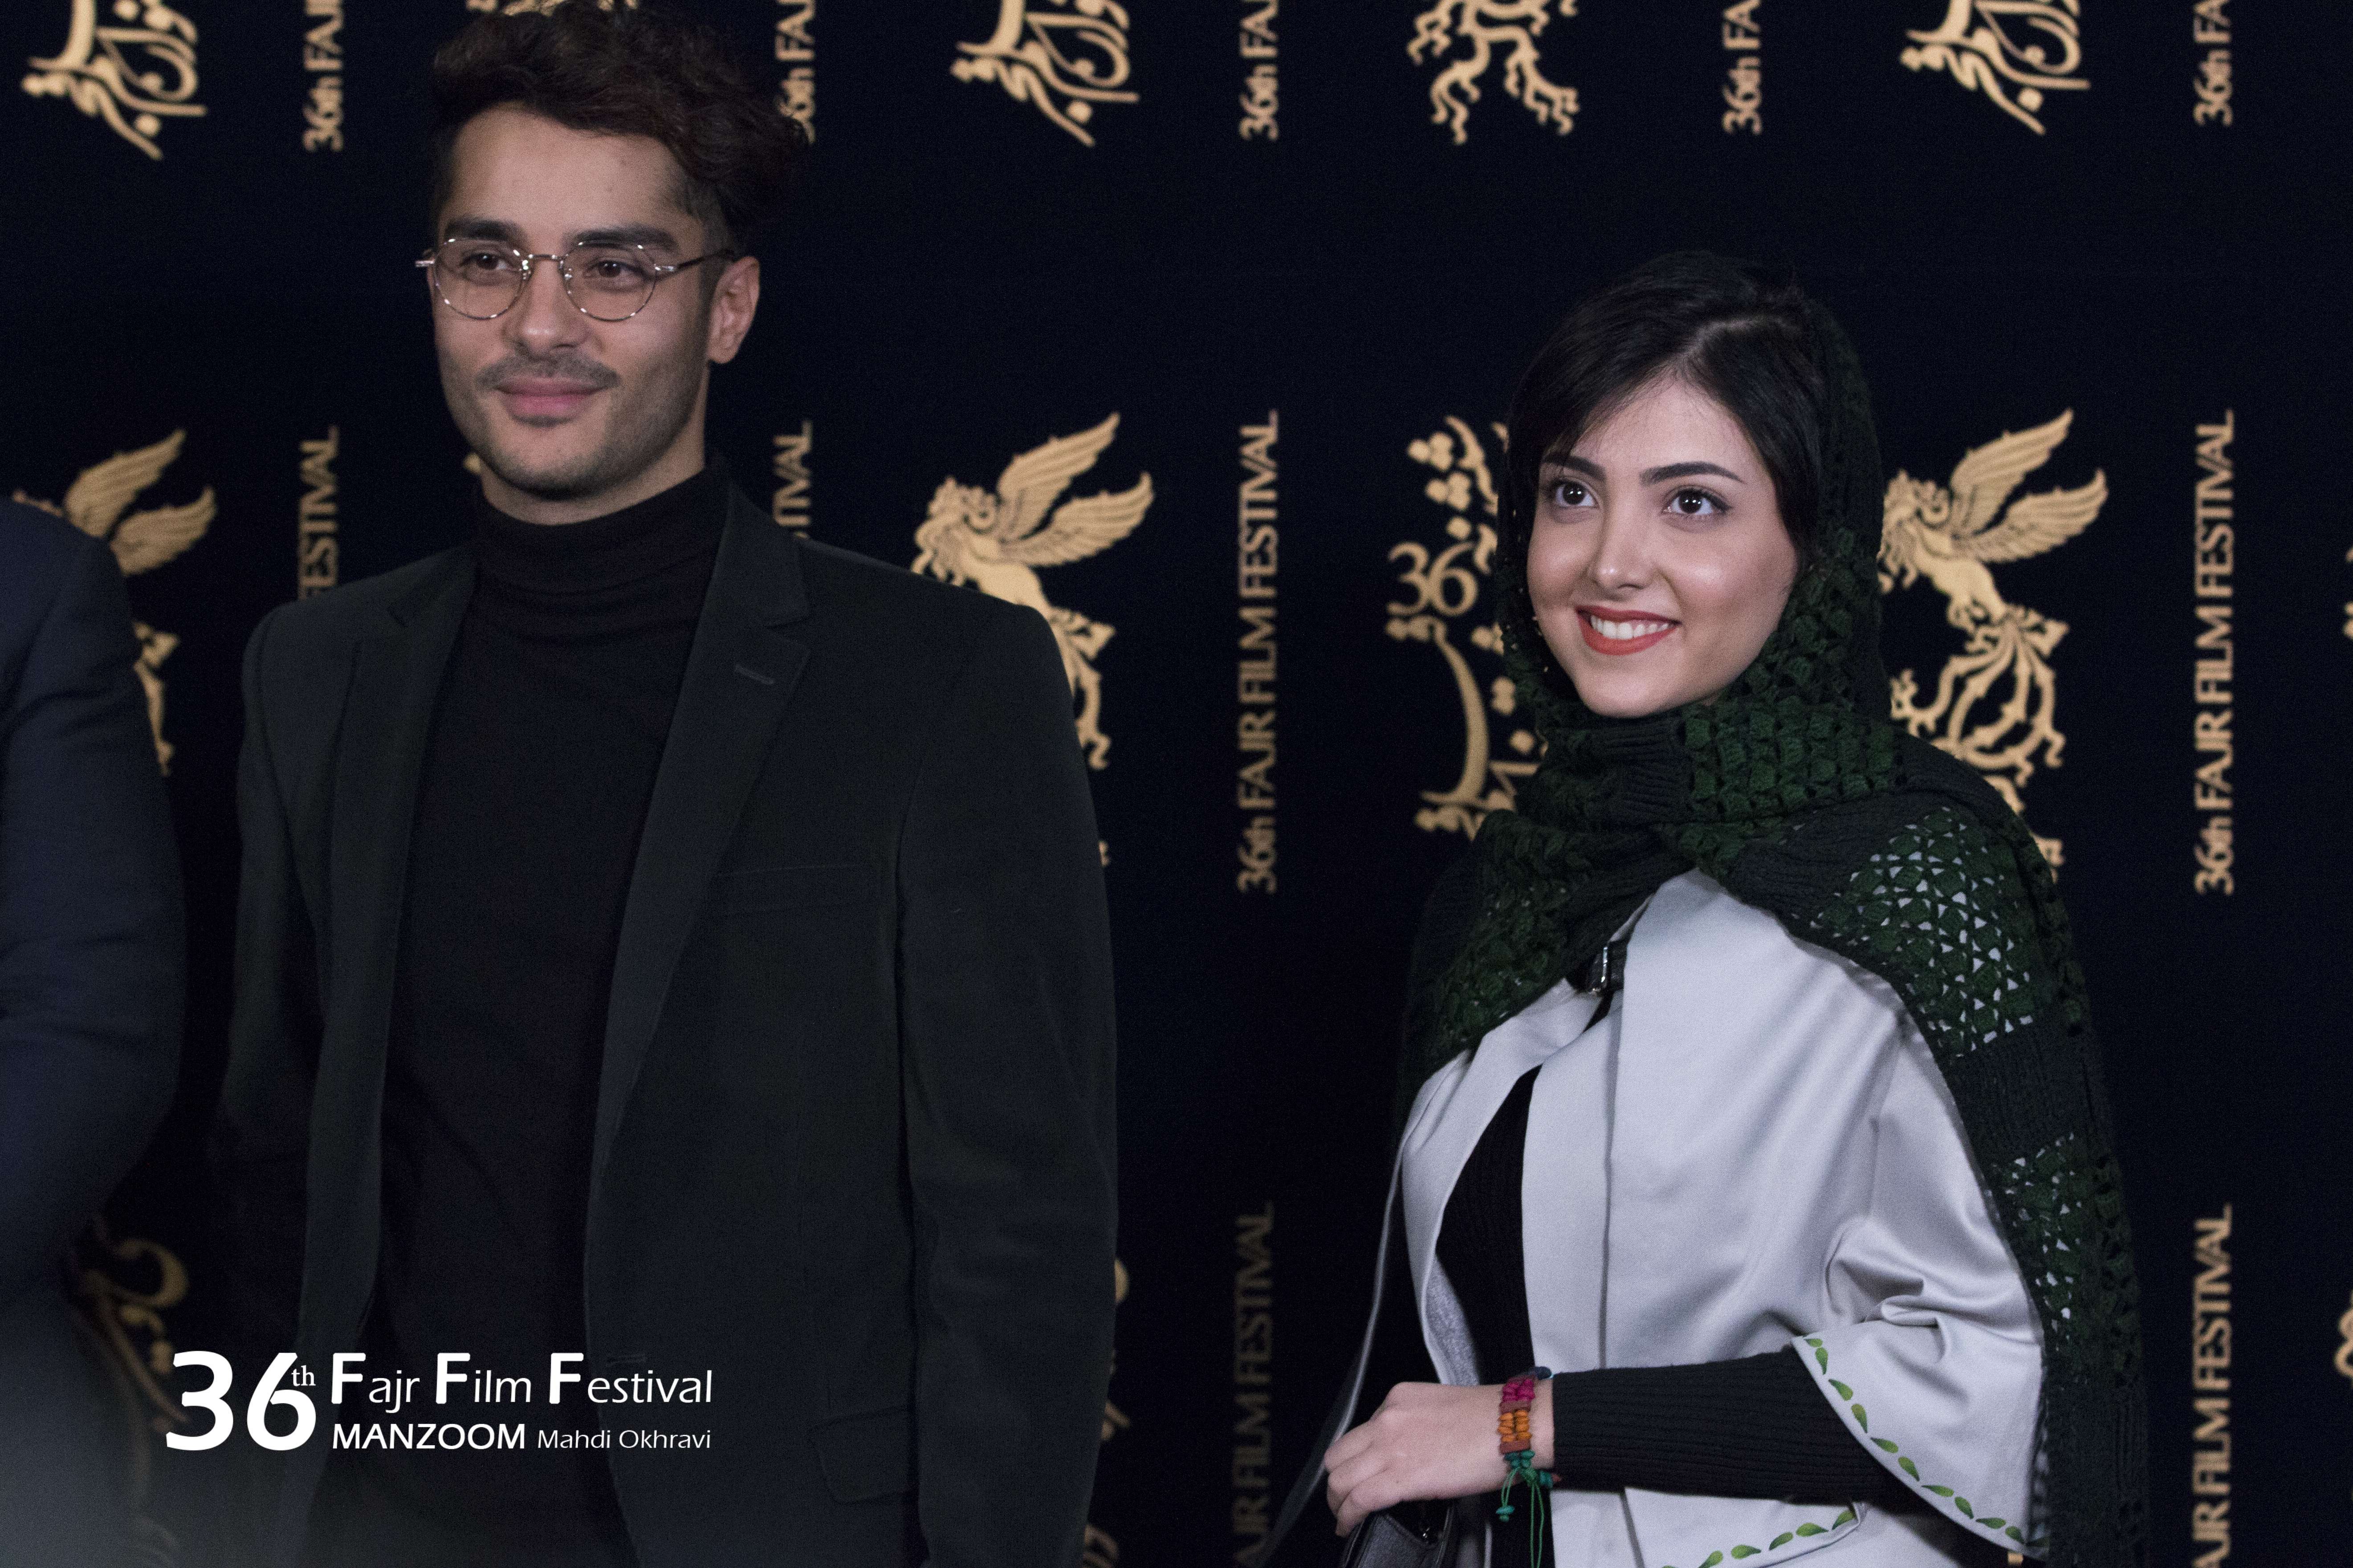 زیبا کرمعلی در جشنواره فیلم سینمایی لاتاری به همراه ساعد سهیلی